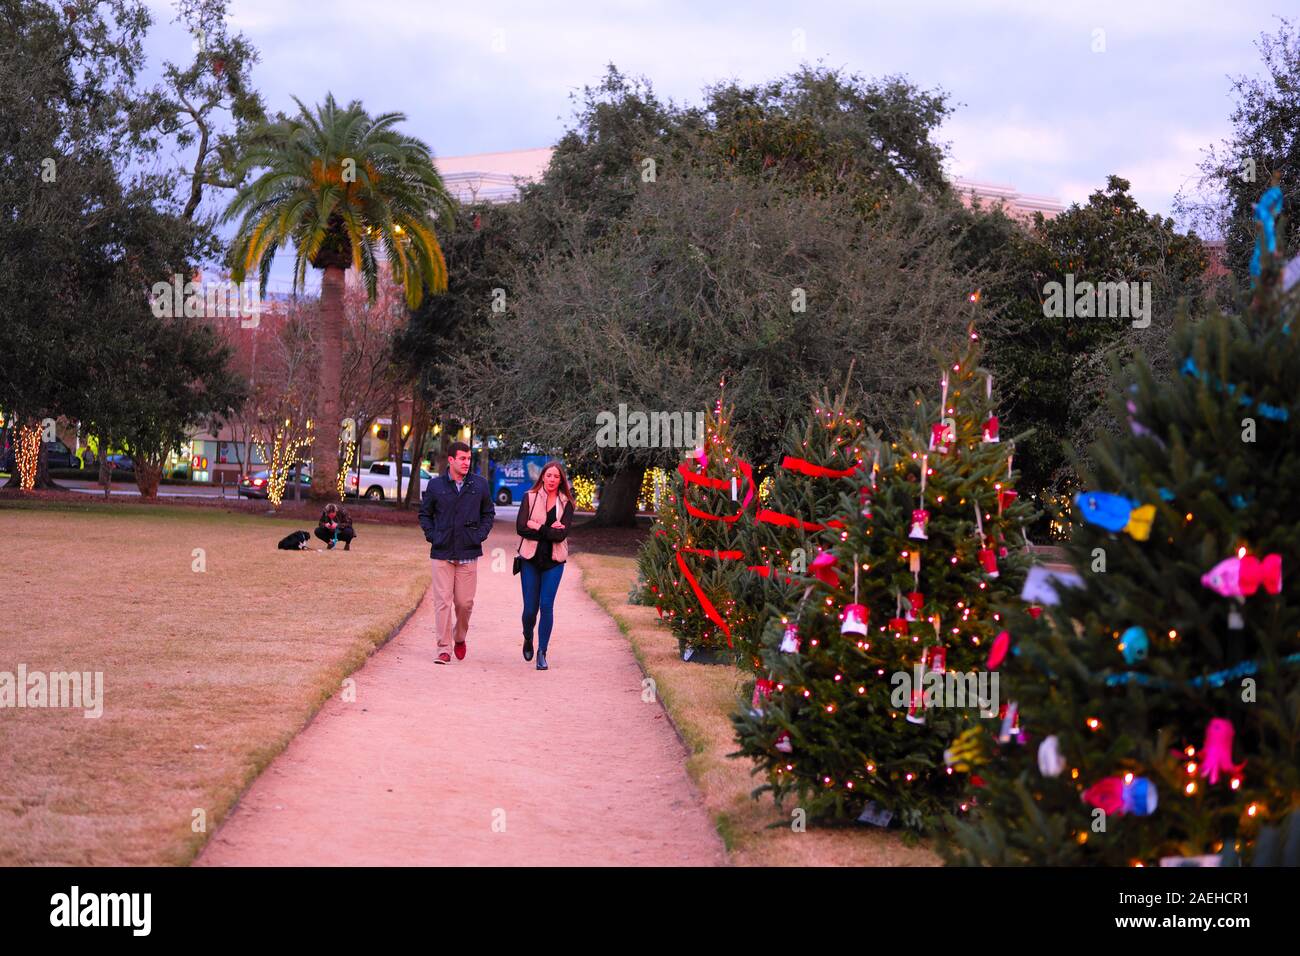 Weihnachtsbeleuchtung an einen öffentlichen Platz mit einem Pfade und Mehrfarbige Dekorative Leuchten und Weihnachtsbäume und Red Ribbon Bögen Stockfoto